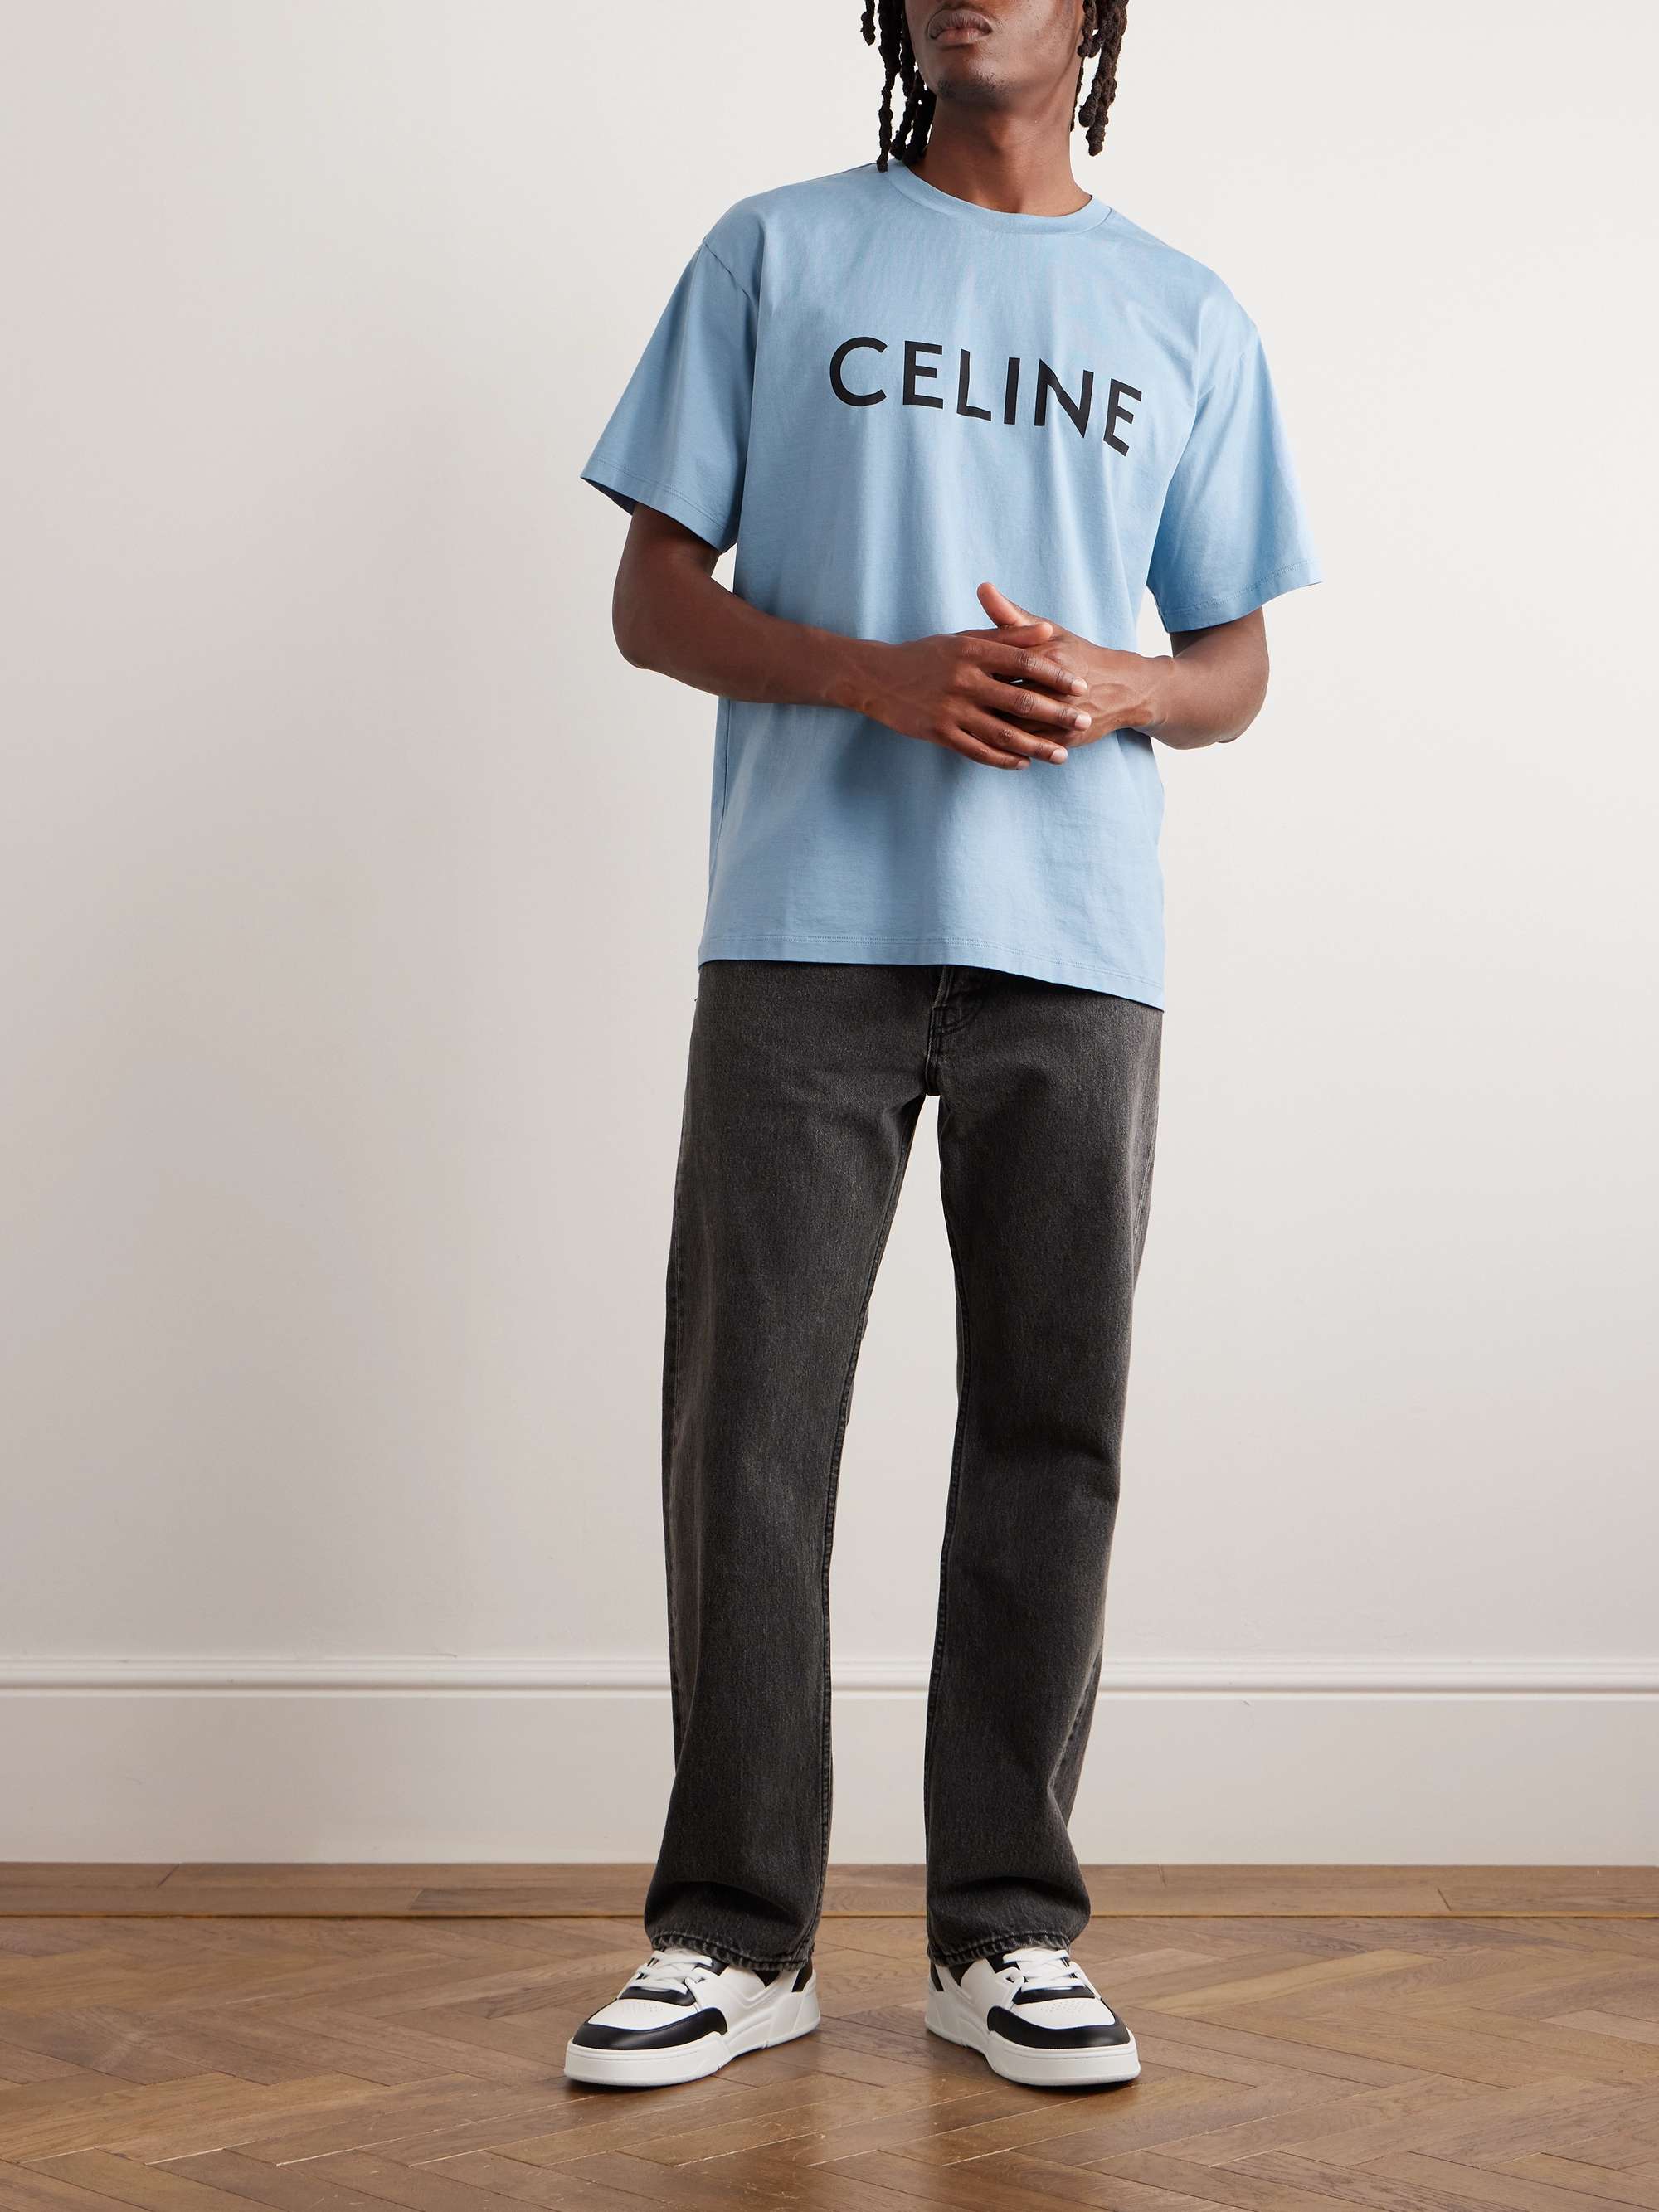 Cheap Paris Logo Celine T Shirt, Celine T Shirt For Women Man